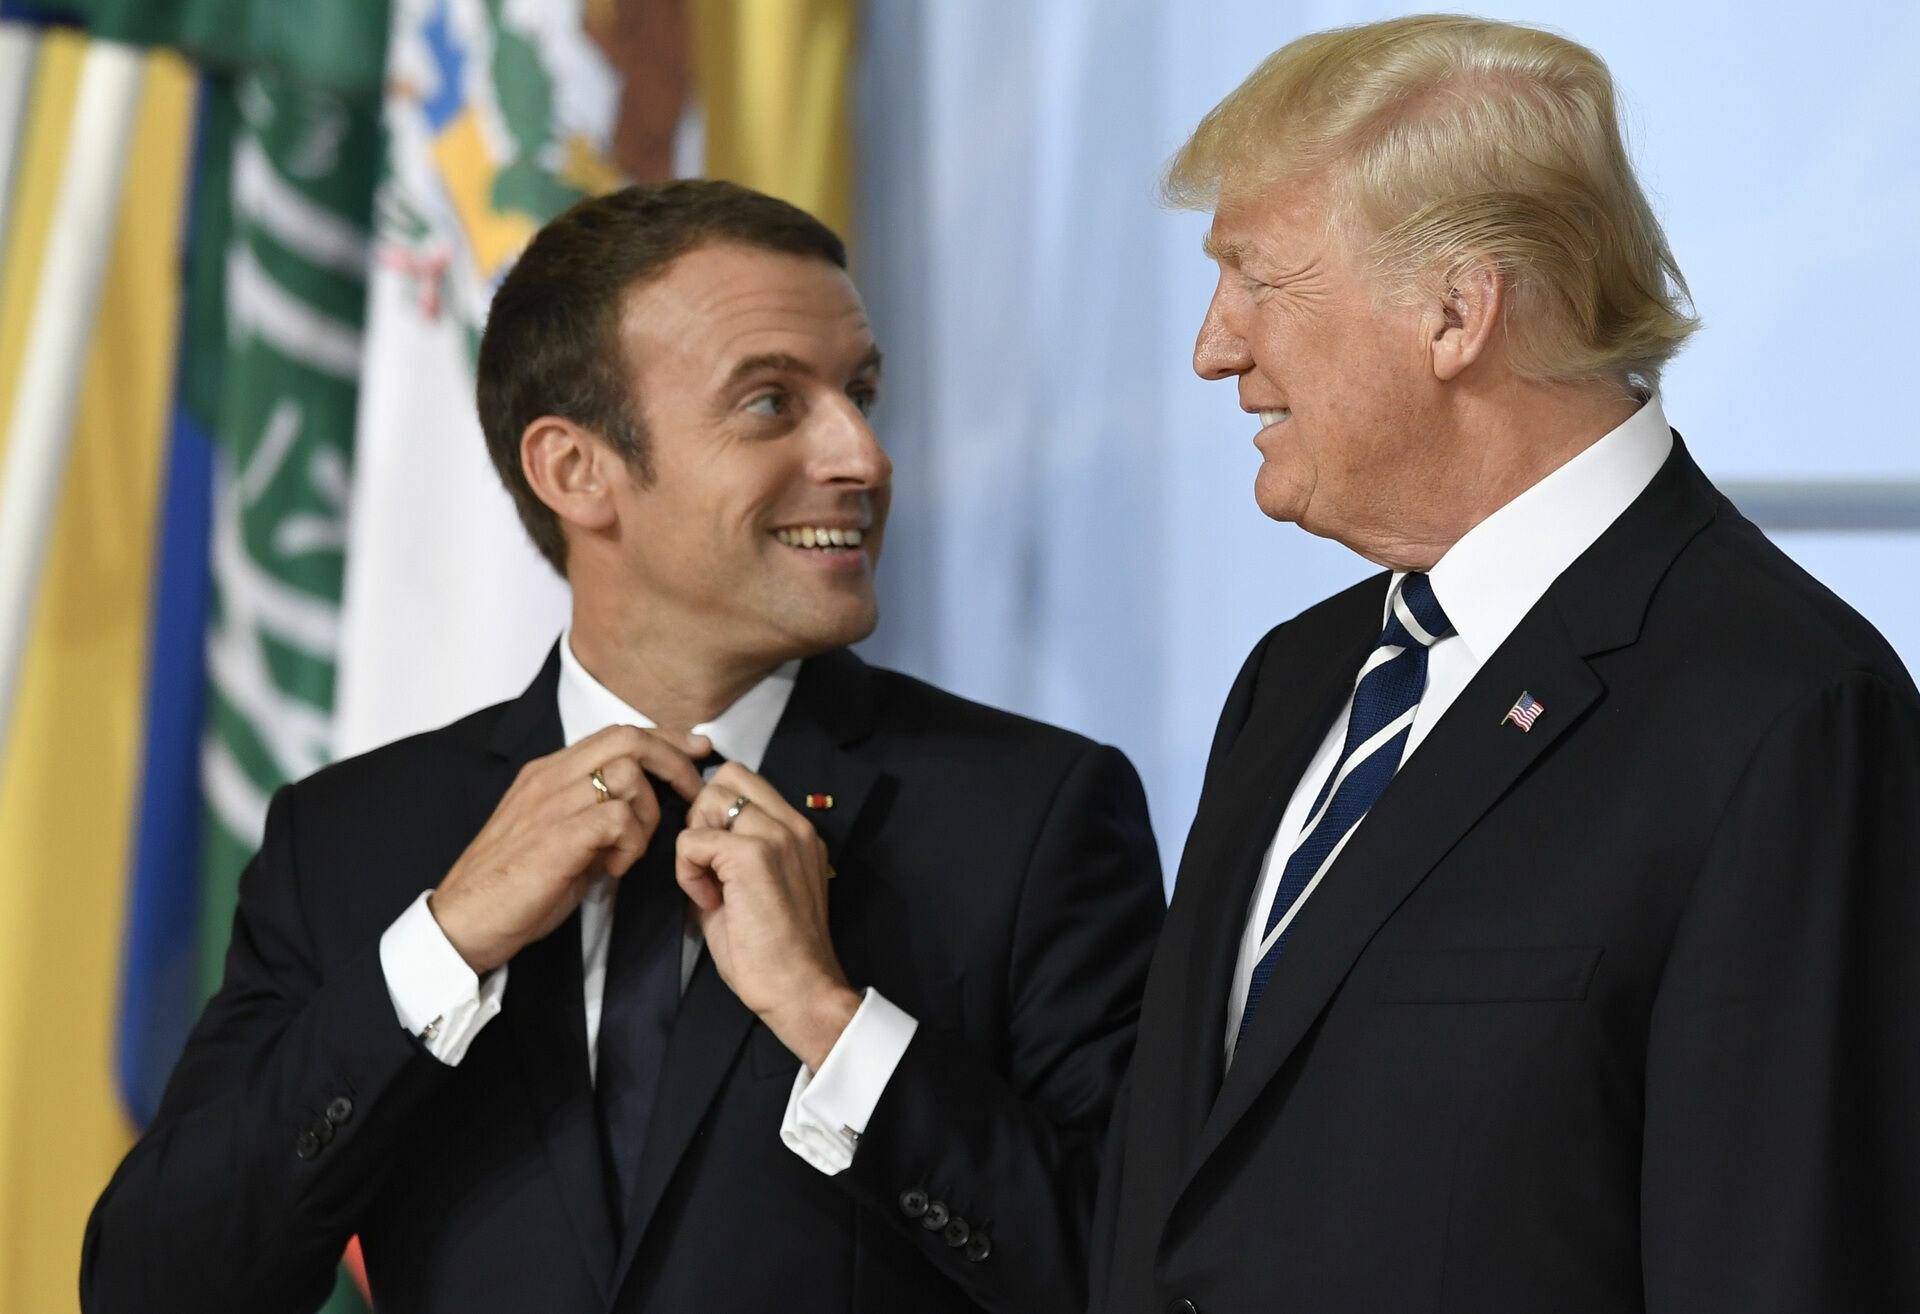 Трамп предлагал Макрону «выгодную торговую сделку» за выход Франции из ЕС